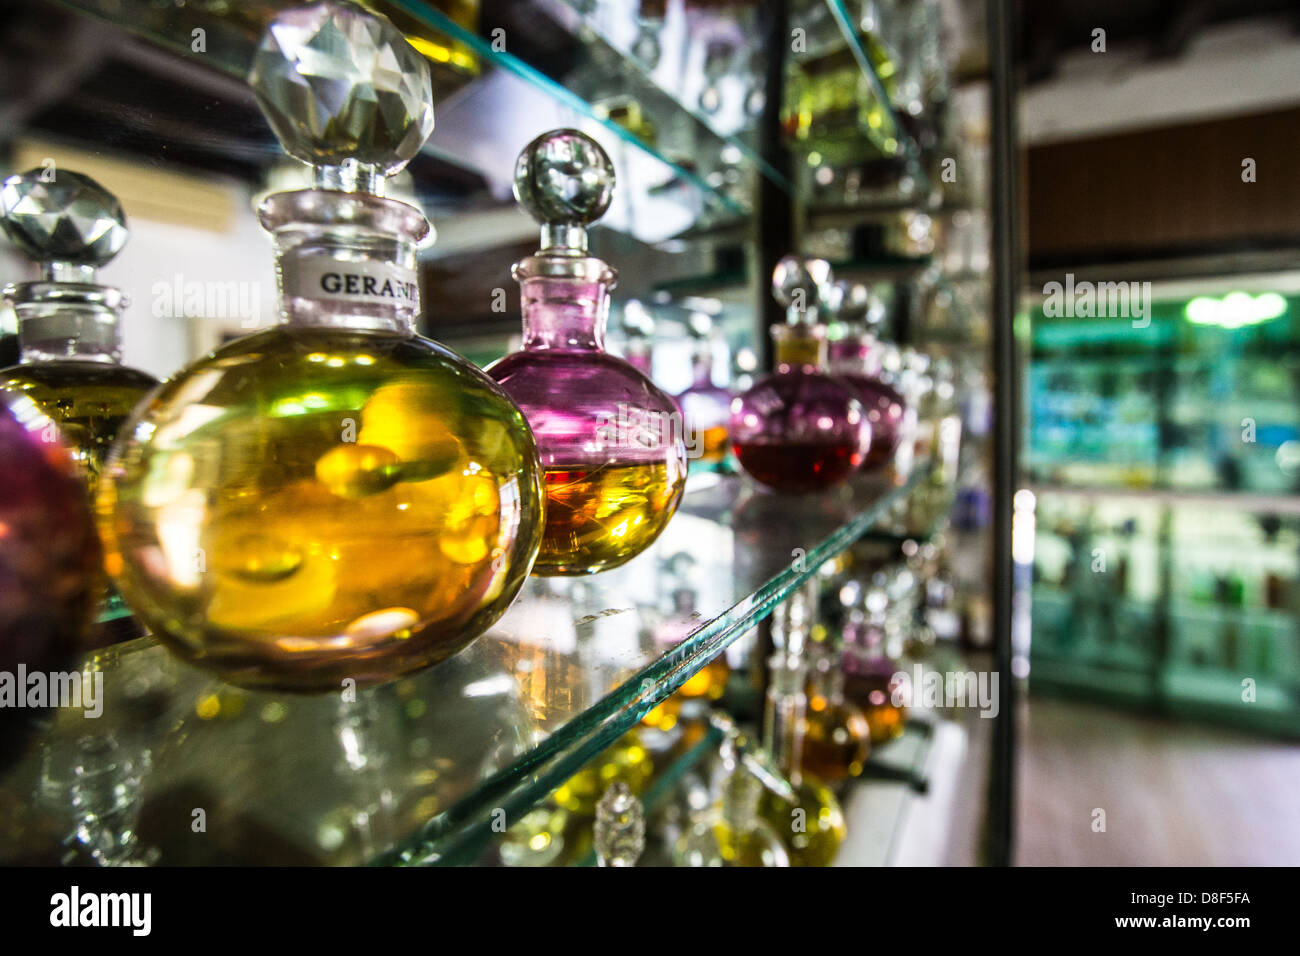 Huiles essentielles et parfums boutique, Cochin, Inde Banque D'Images